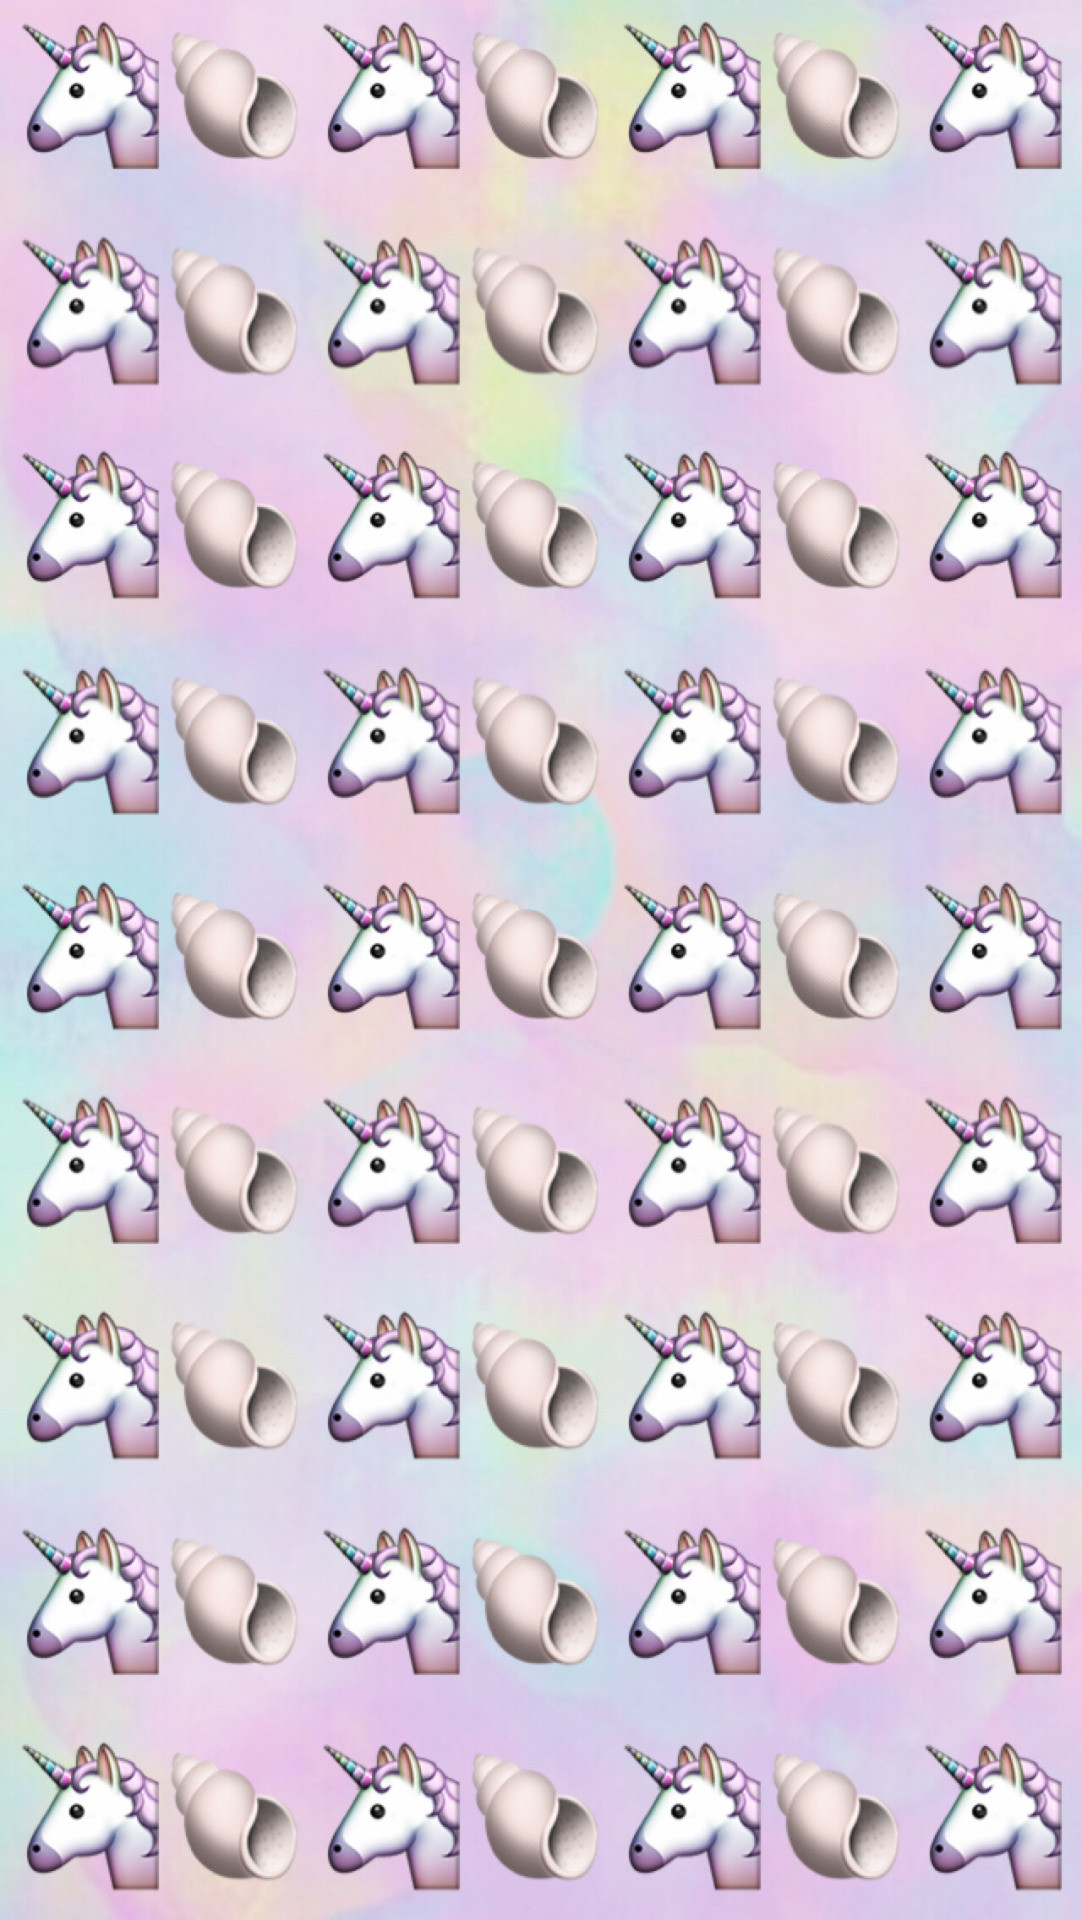 Unicorn emoji backgrounds like if you save / use A